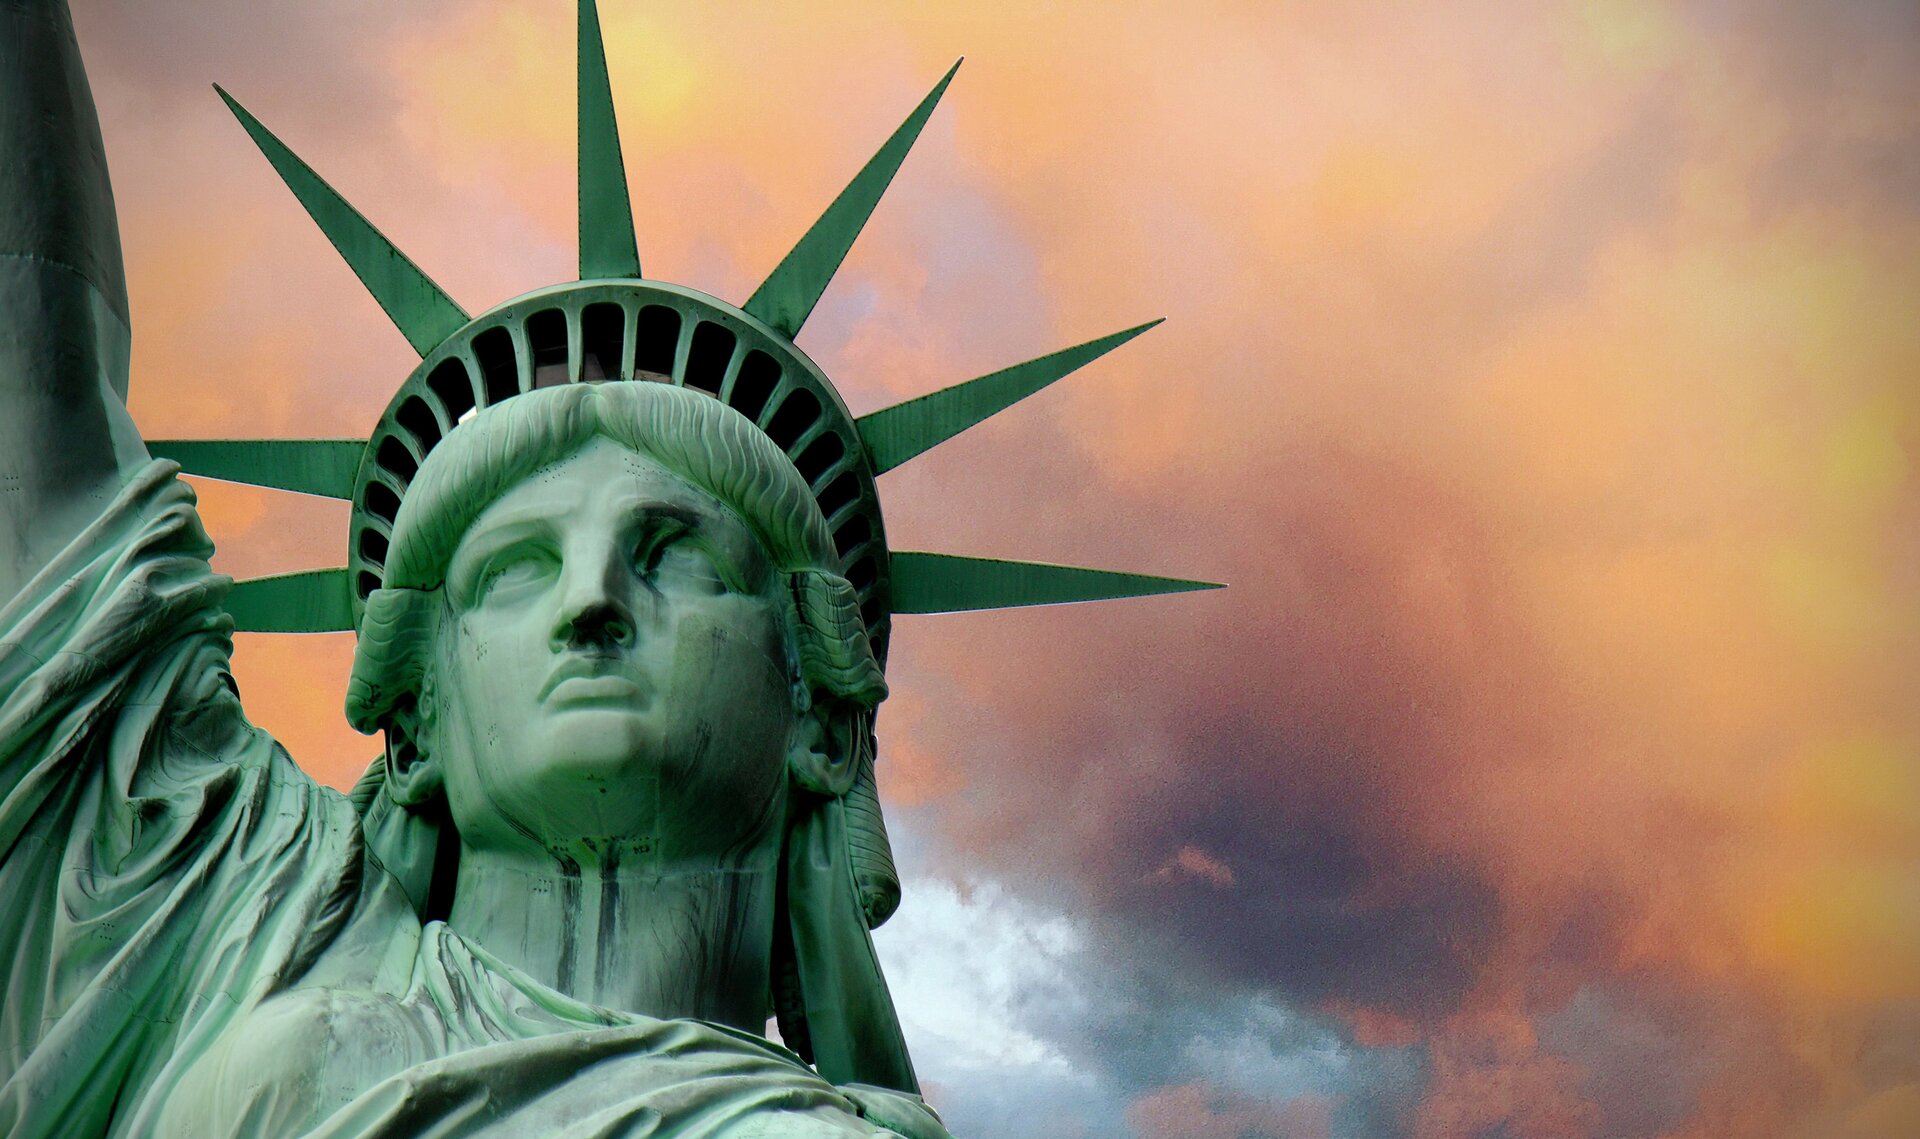 Zdjęcie ukazuje kobiecą głowę pomnika - Statuy Wolności. Na głowie jest korona z siedmioma promieniami.  W koronie znajdują się okna. Pomnika ma kolor zielonkawy. 